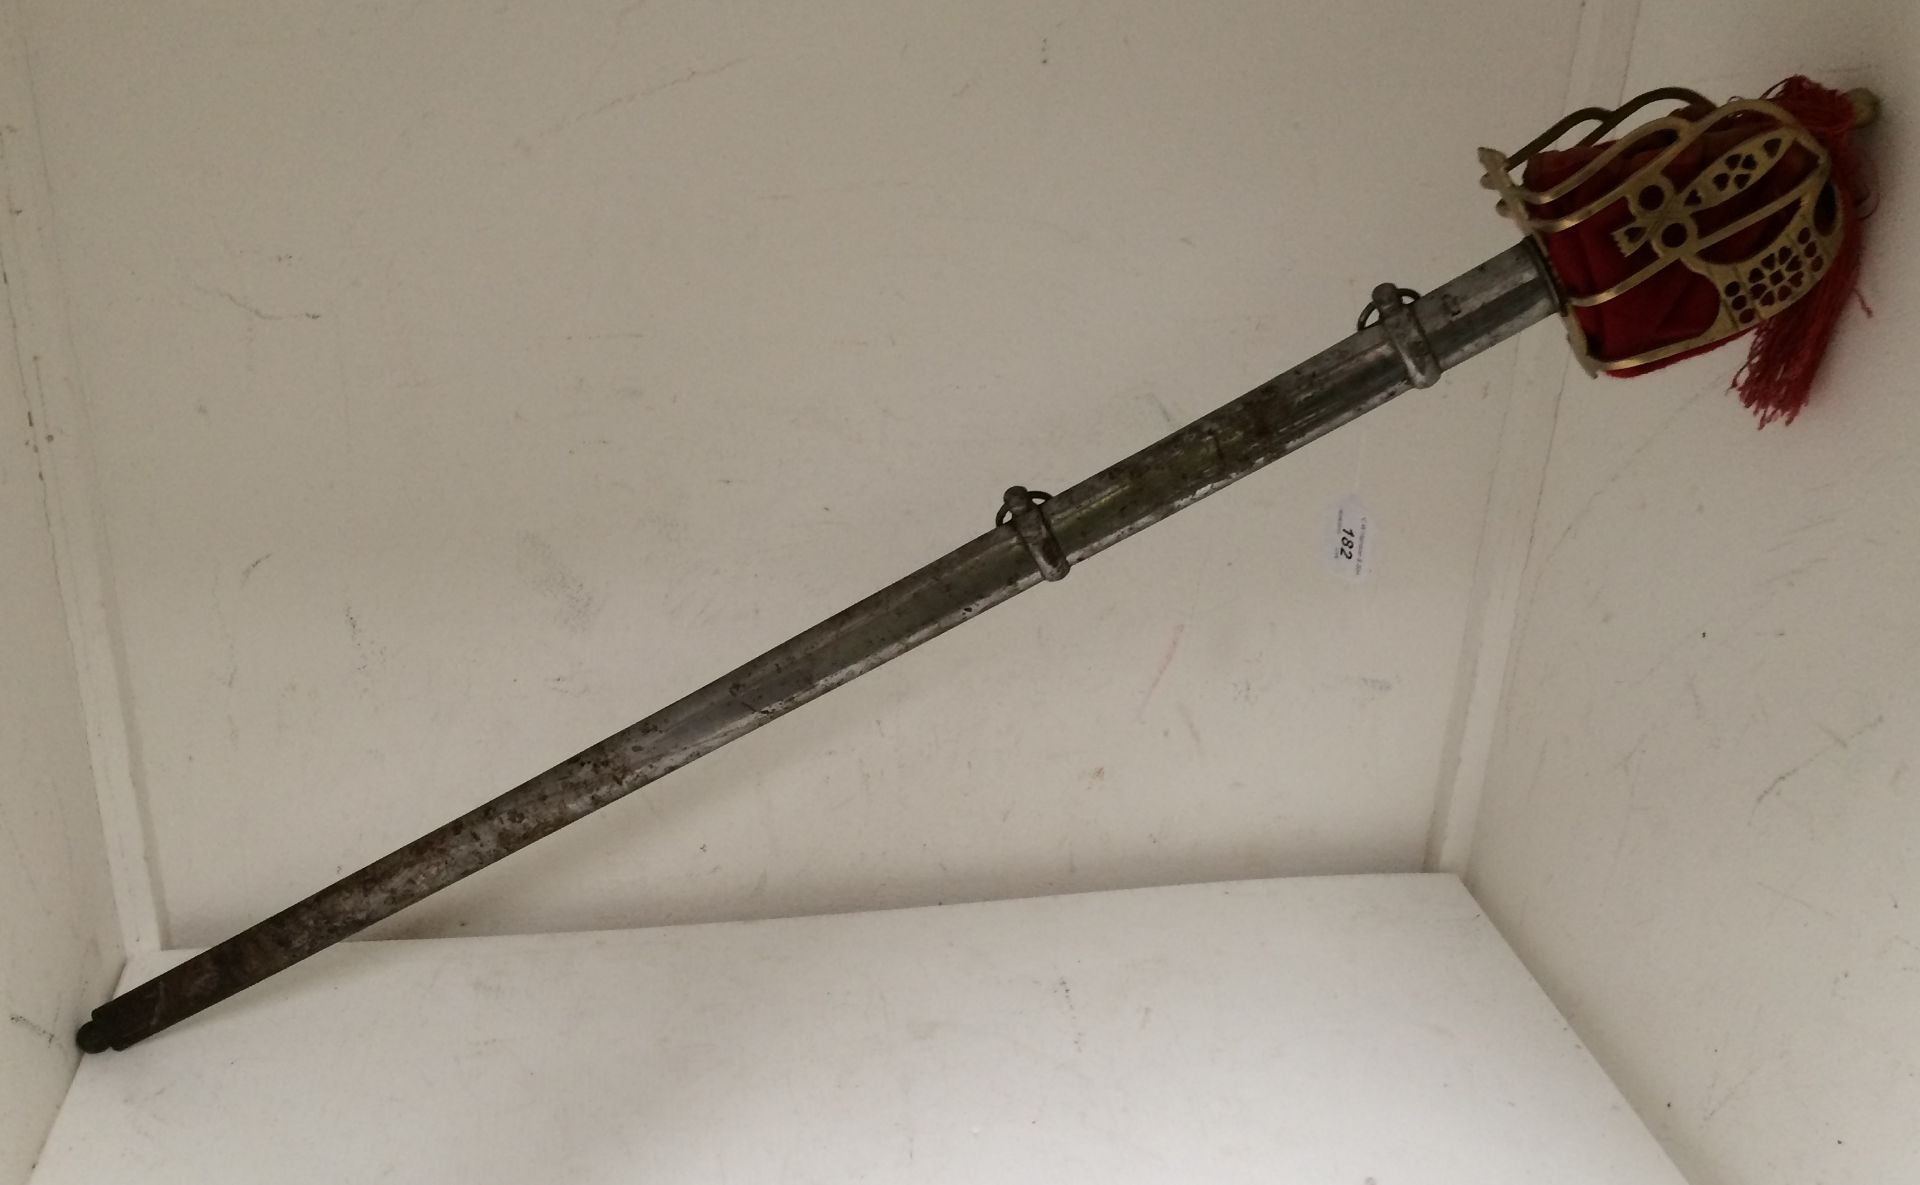 A cutlass sword with brass handle guard